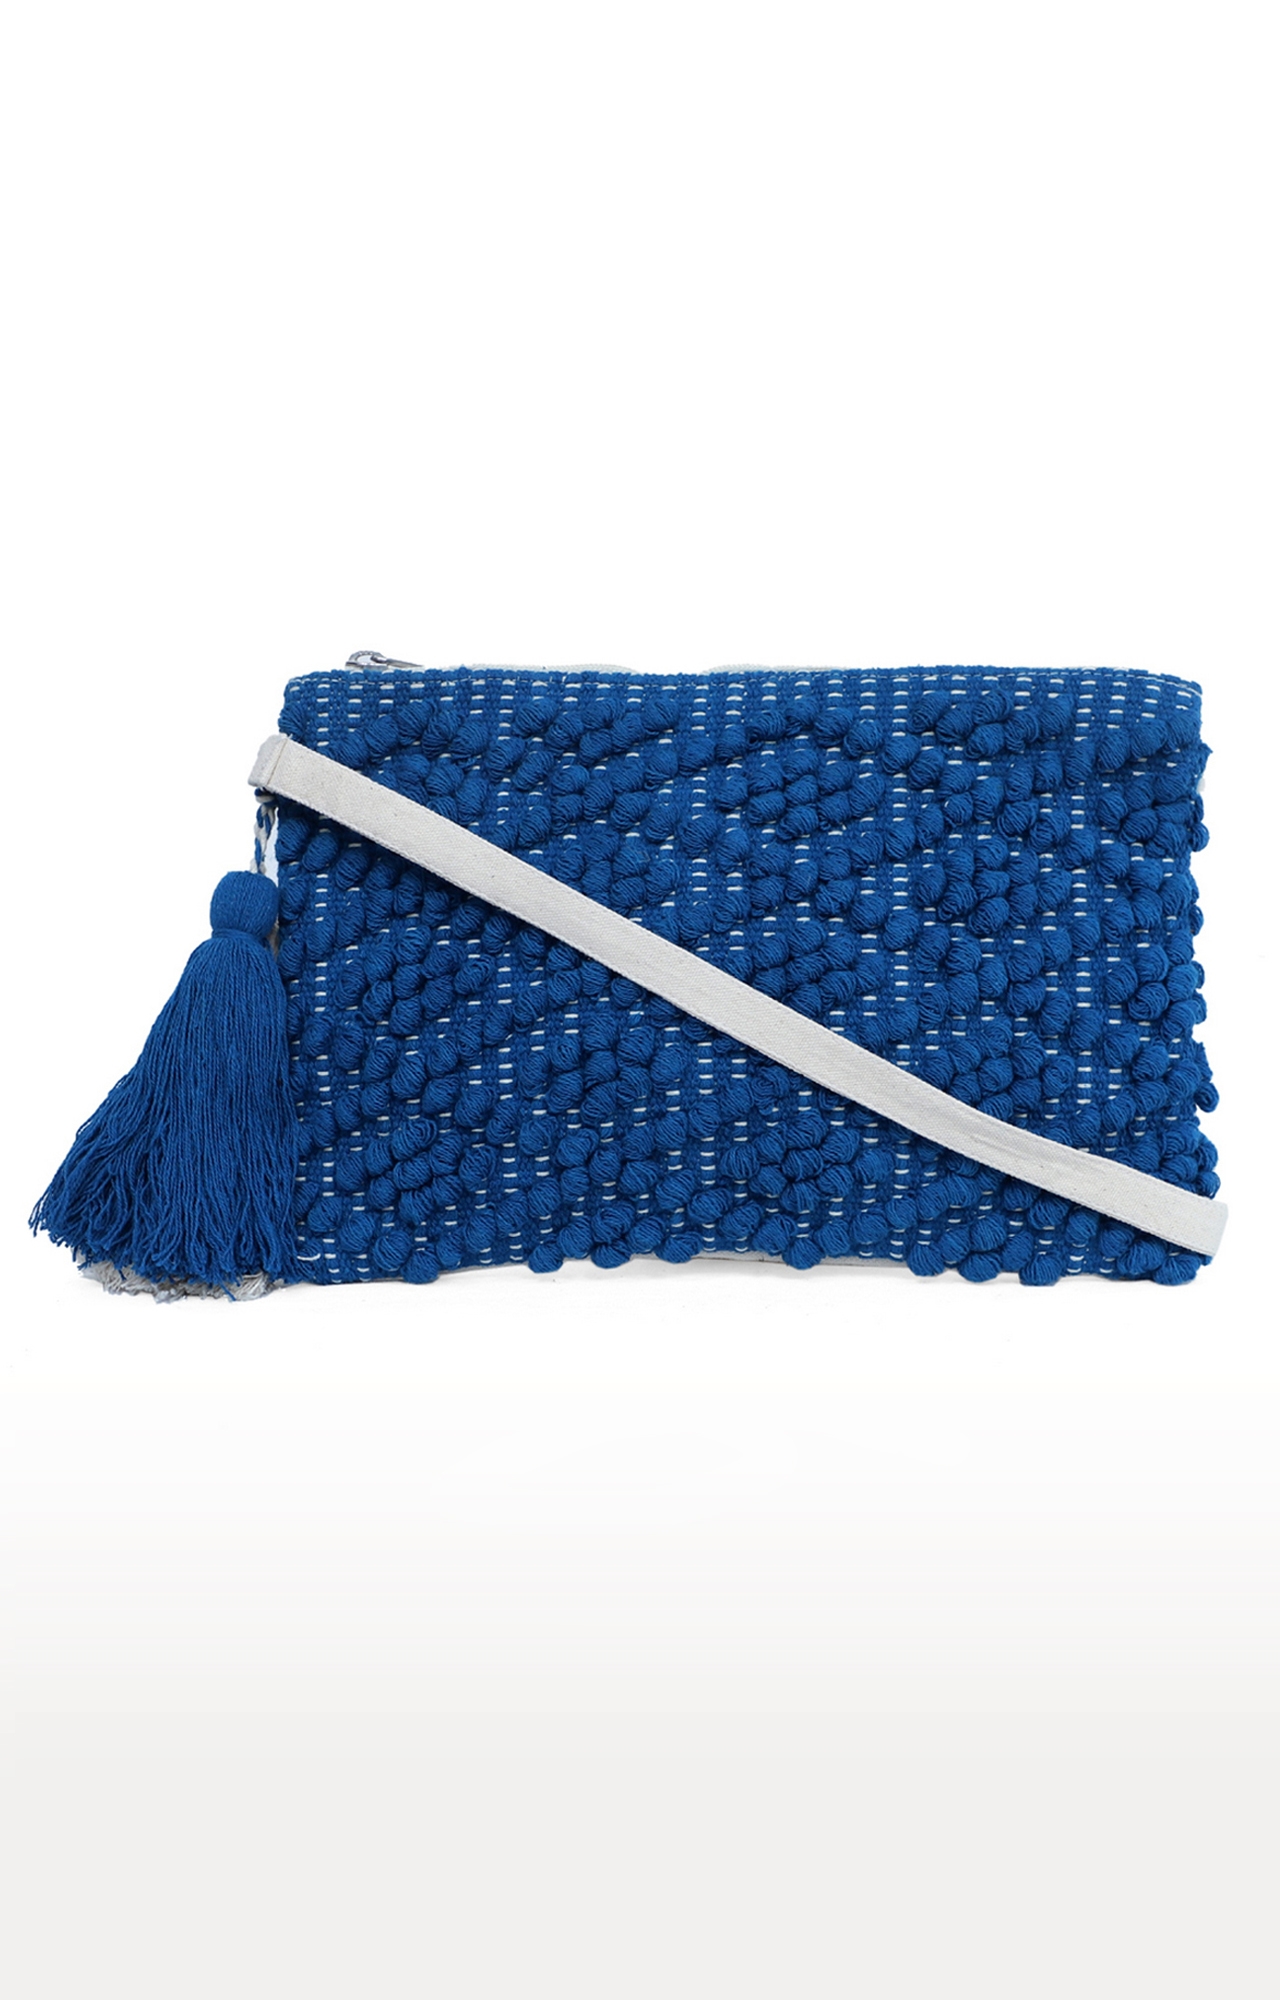 DIWAAH | Diwaah Blue Embroidered Sling Bags